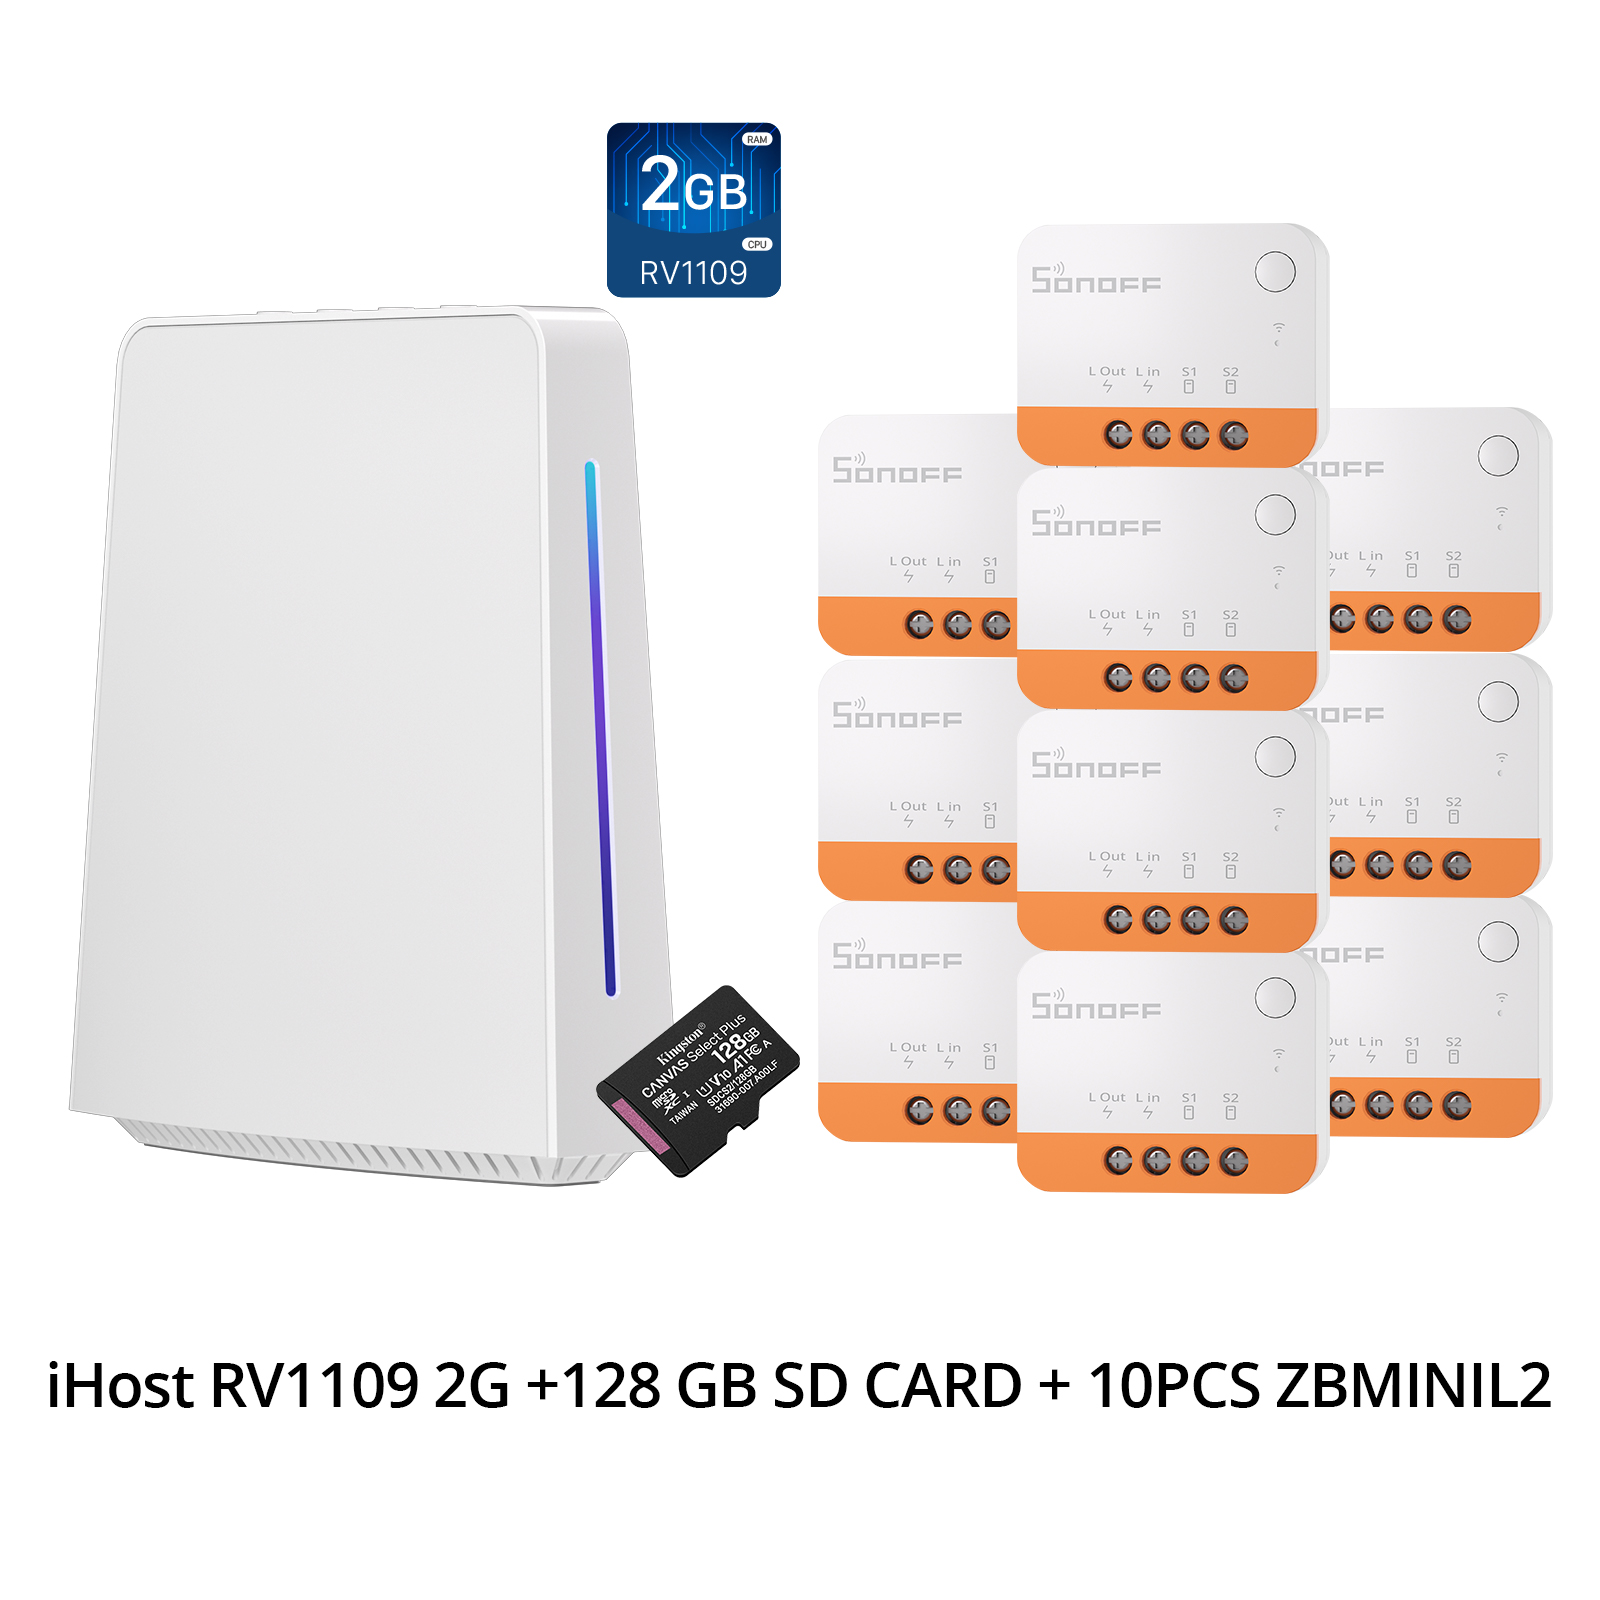 1 PCS iHost RV1109 2G +128 GB SD CARD + 10PCS ZBMINIL2